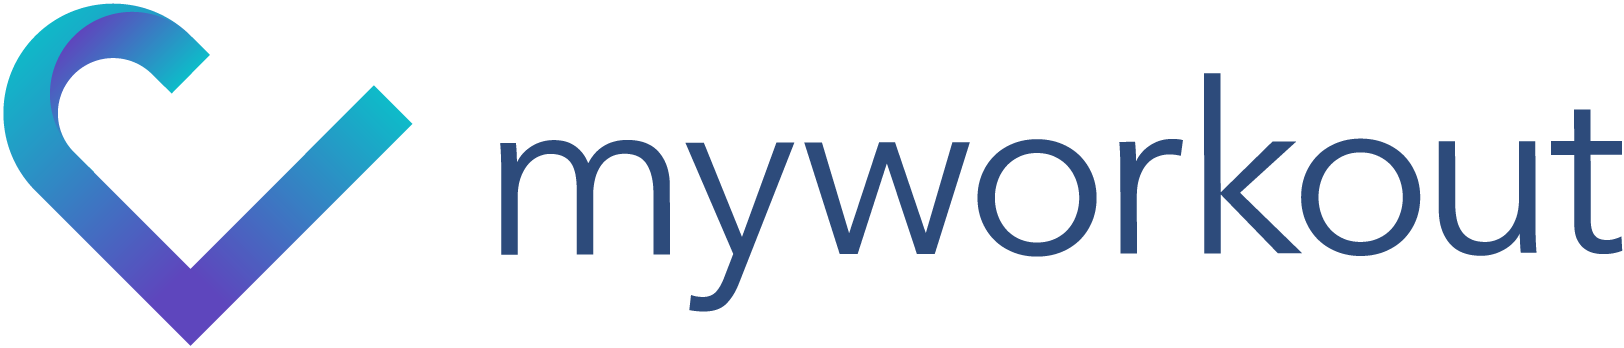 Myworkout-logo-liggende-farge-1